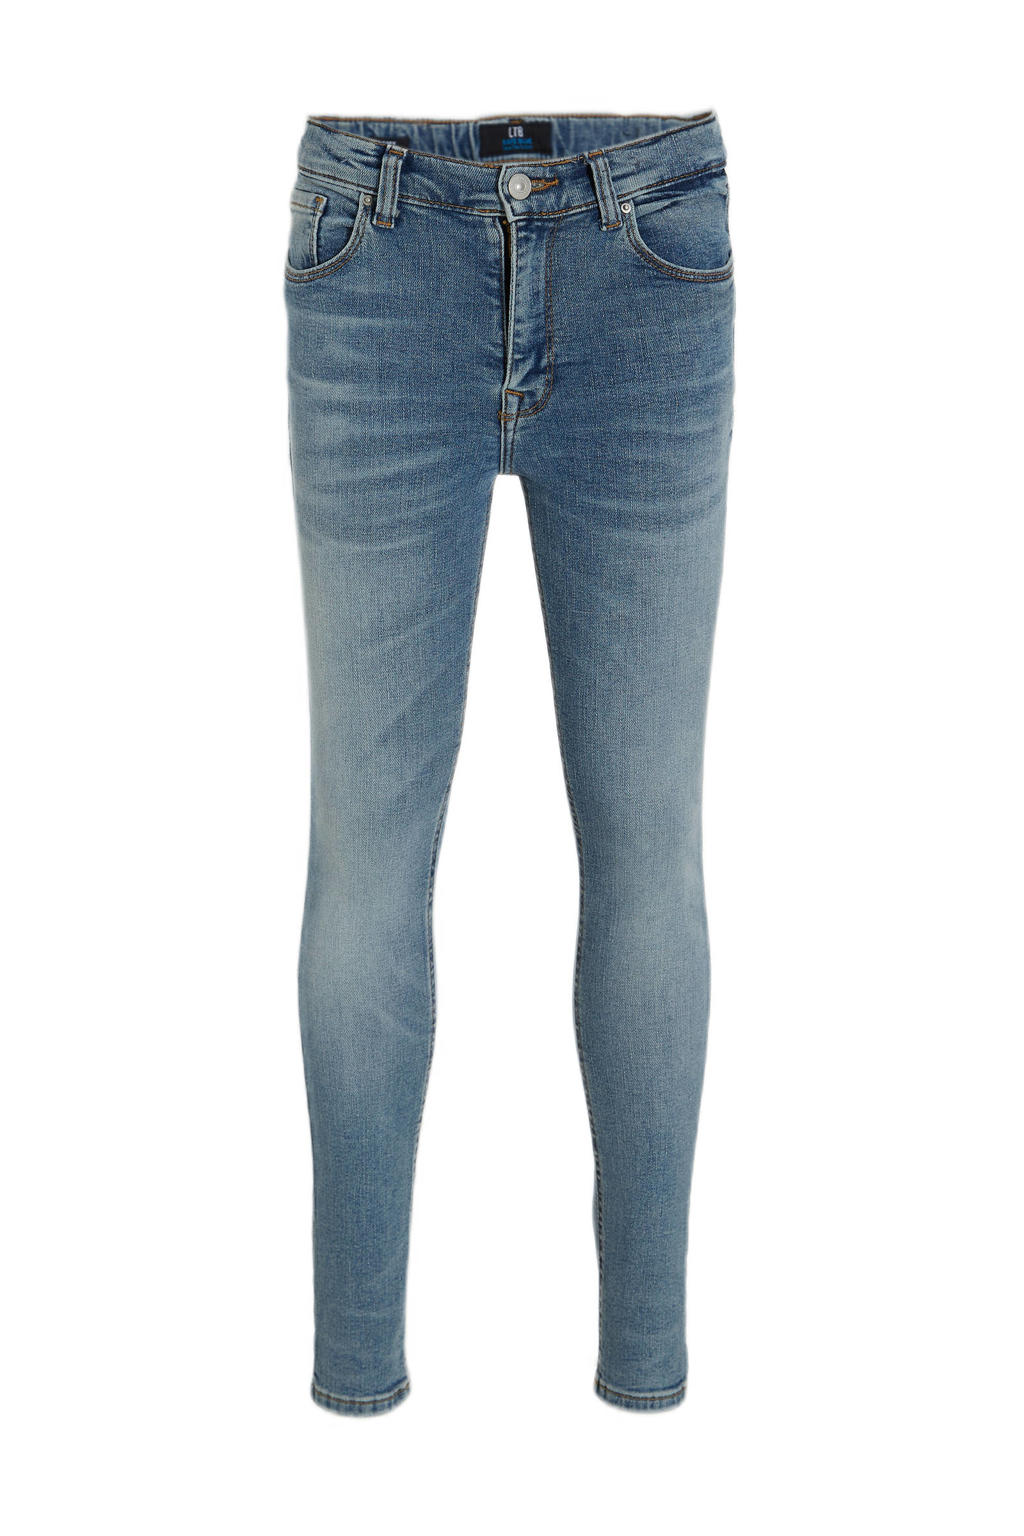 Medium blue denim meisjes LTB high waist skinny jeans Amy G van stretchdenim met rits- en drukknoopsluiting